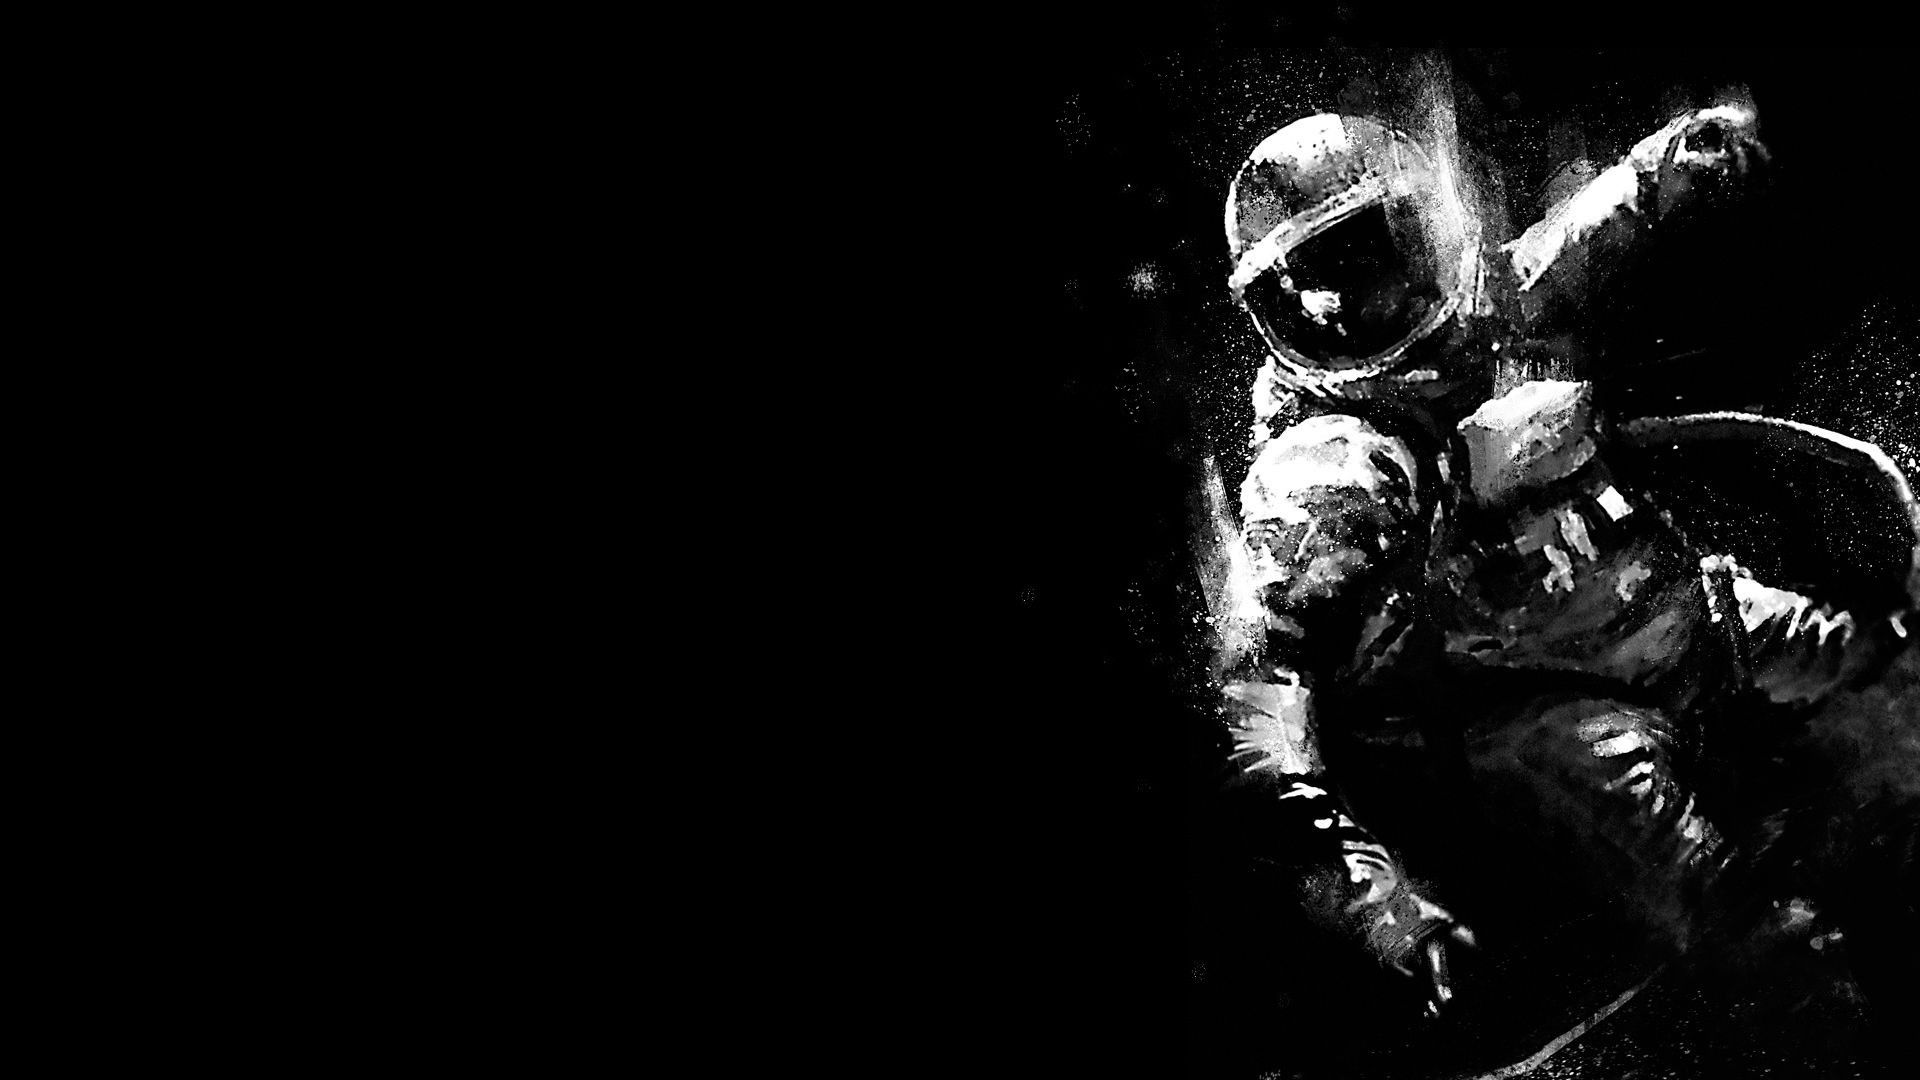 Dark Astronaut Wallpapers